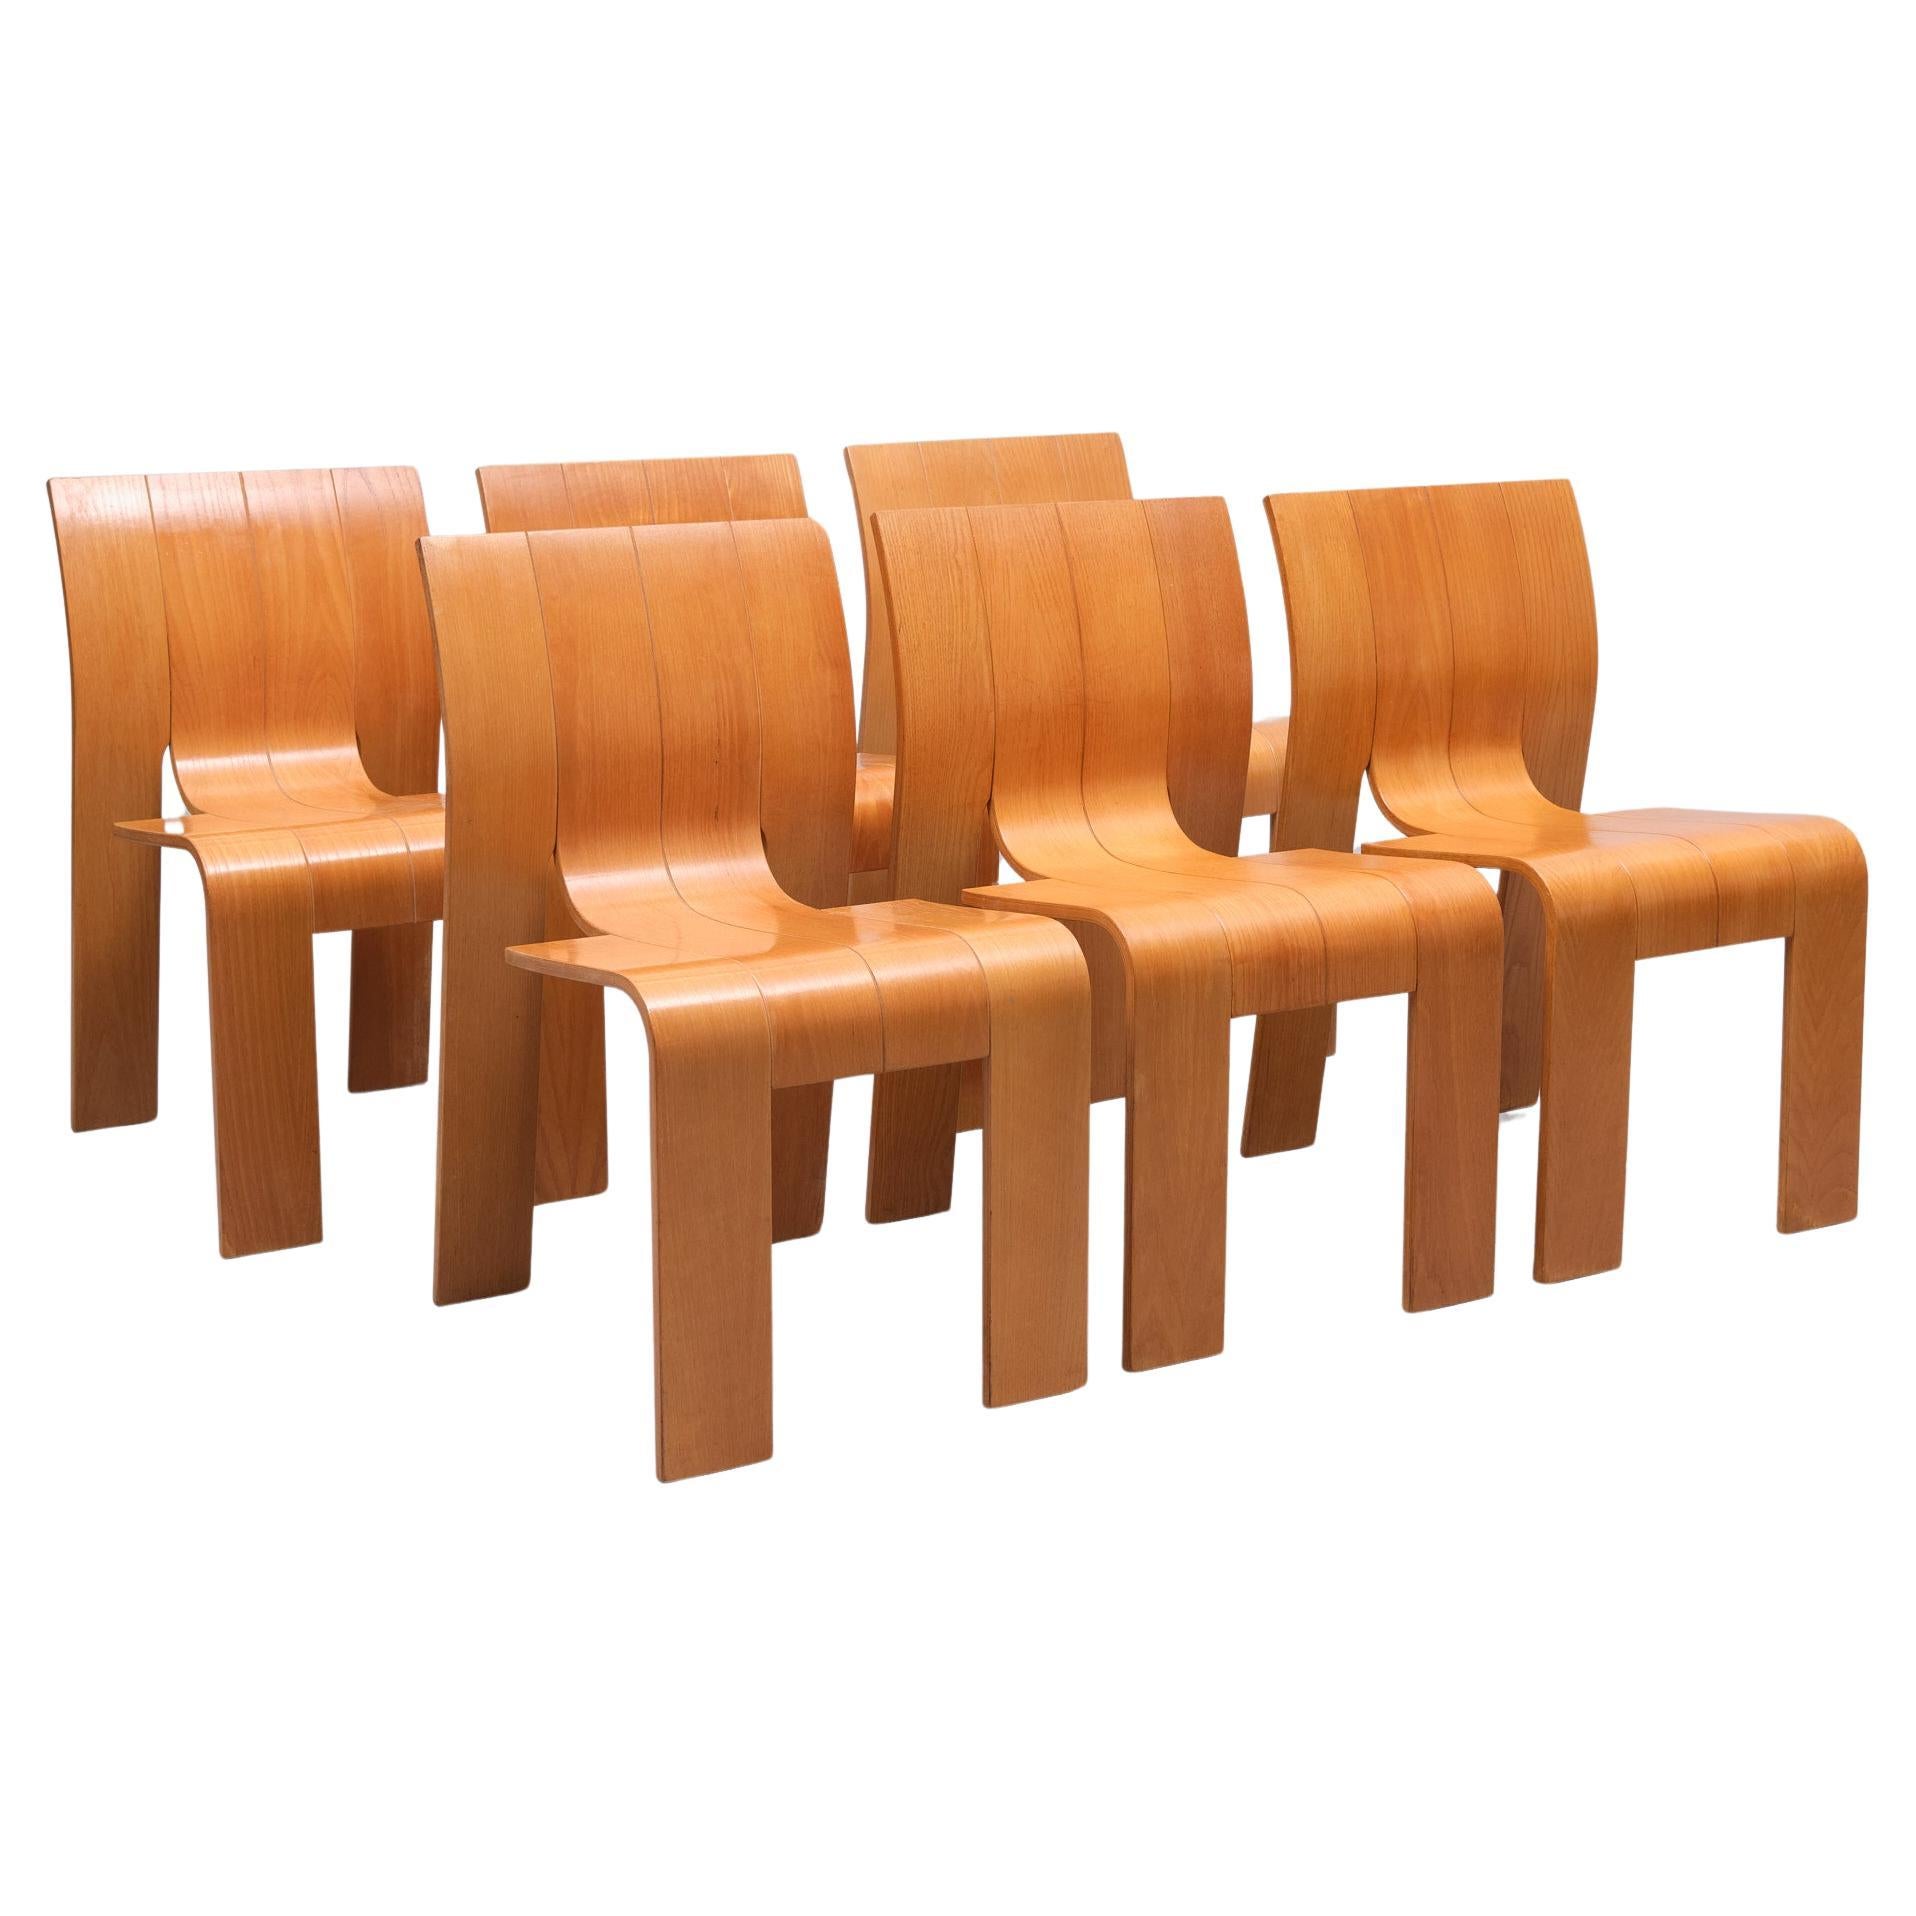 6 Gijs Bakker Strip Chairs 1972 Holland 